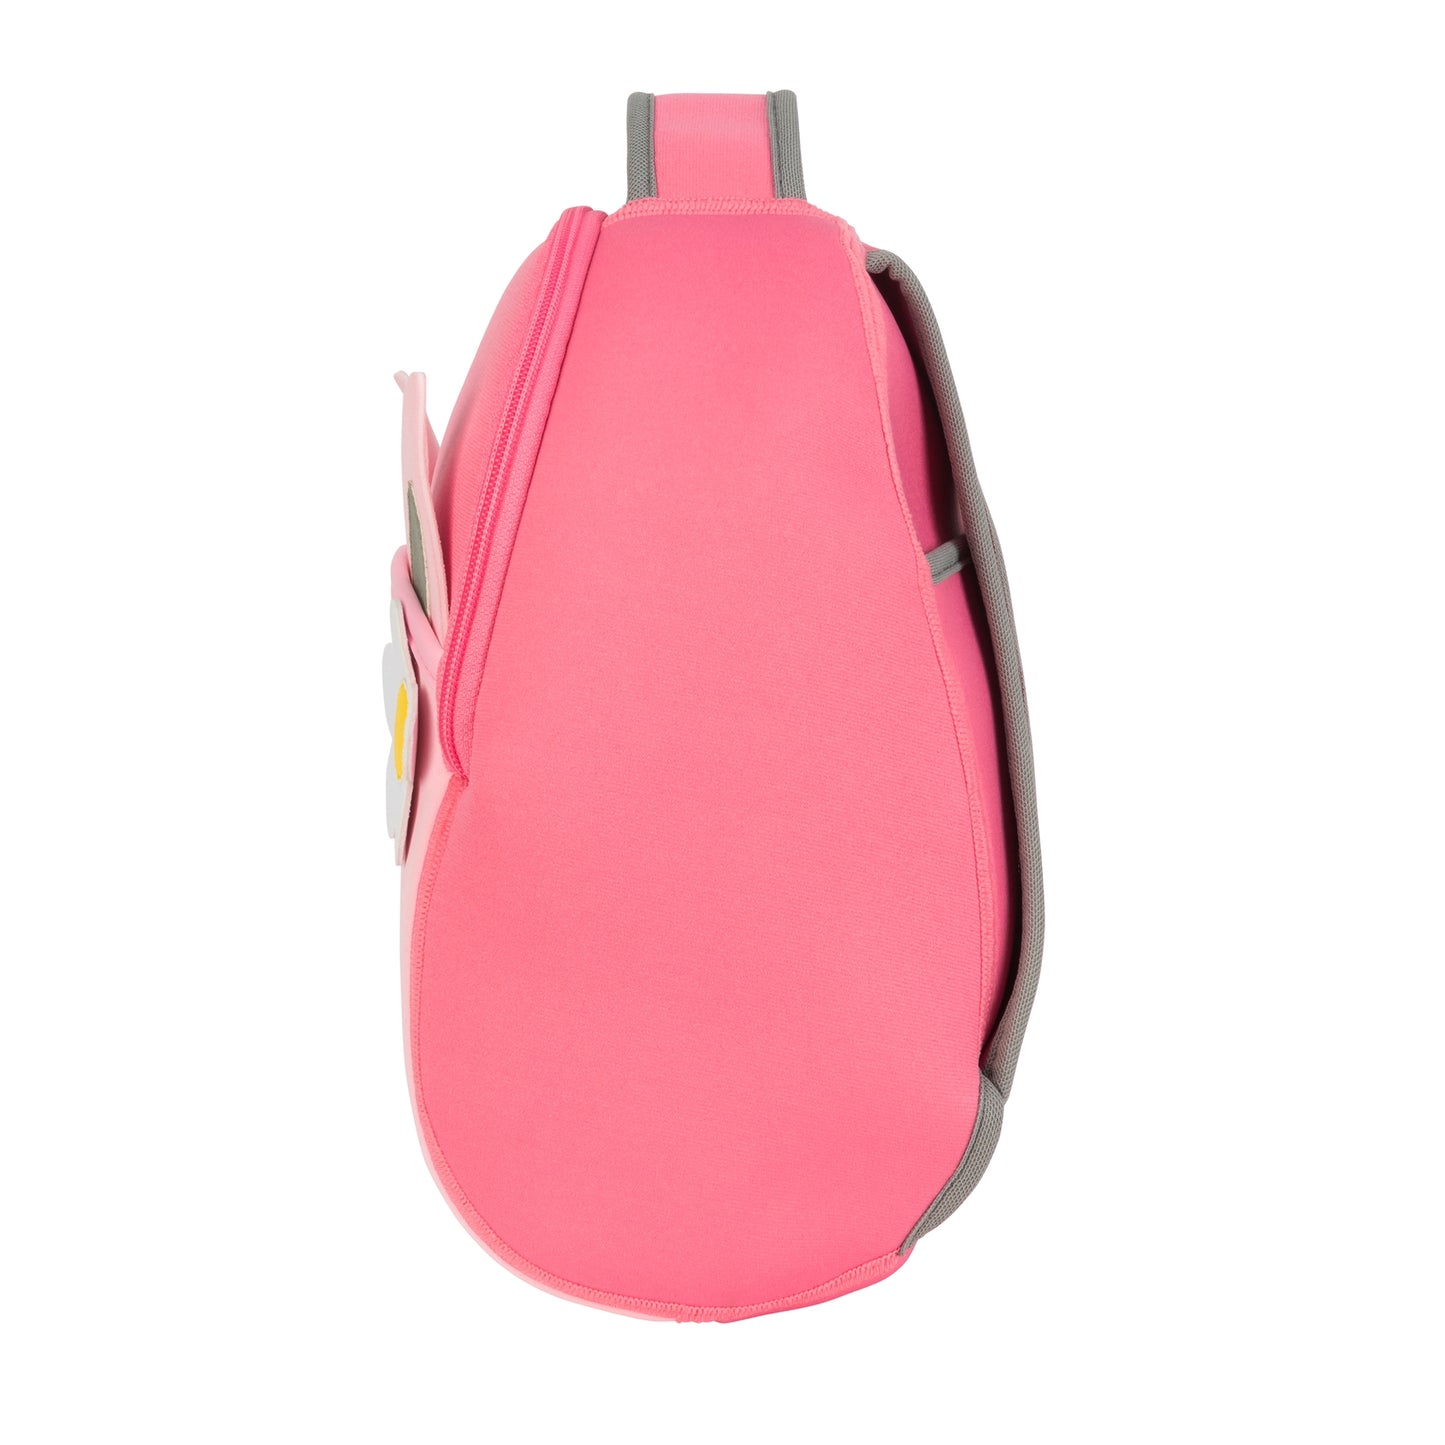 Backpack - Pink Pigletl